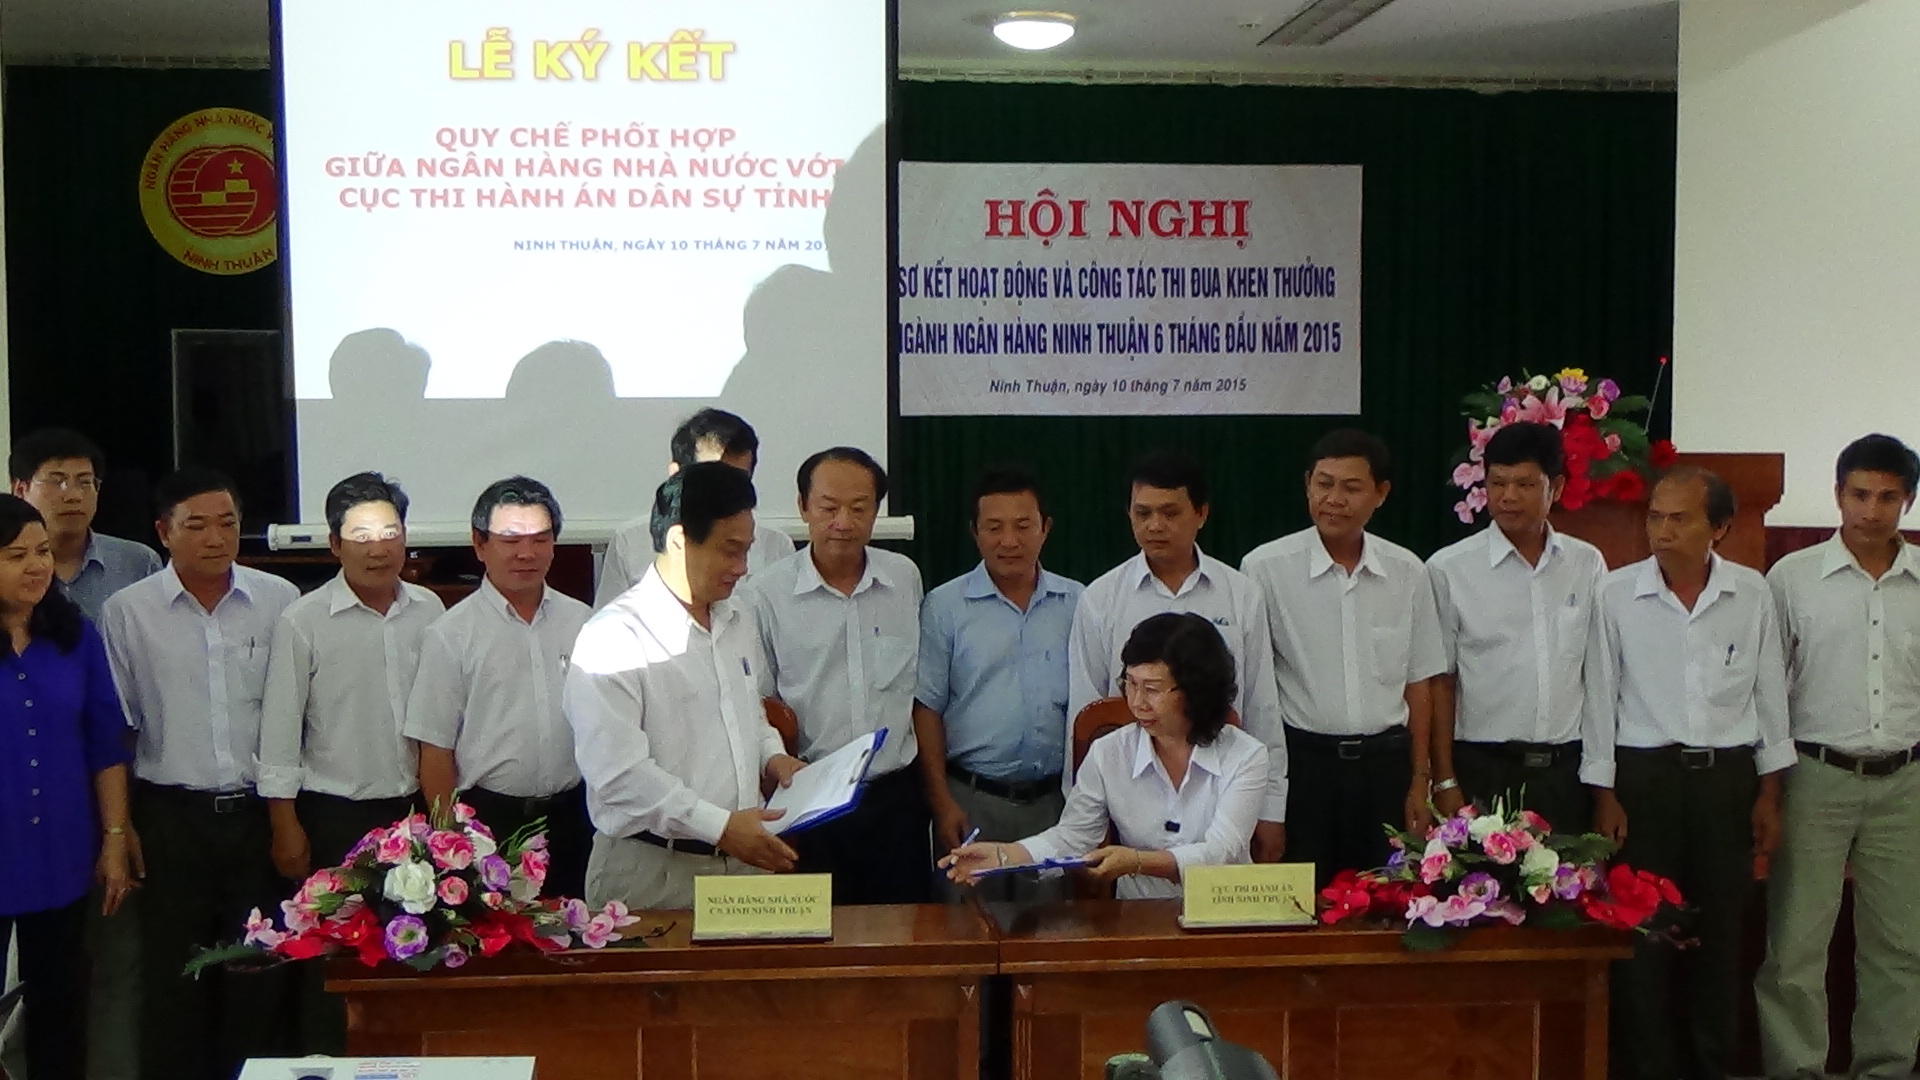 Cục Thi hành án dân sự tỉnh và Ngân hàng Nhà nước Việt Nam- Chi nhánh tỉnh Ninh Thuận tổ chức ký kết quy chế phối hợp trong công tác thi hành án dân sự